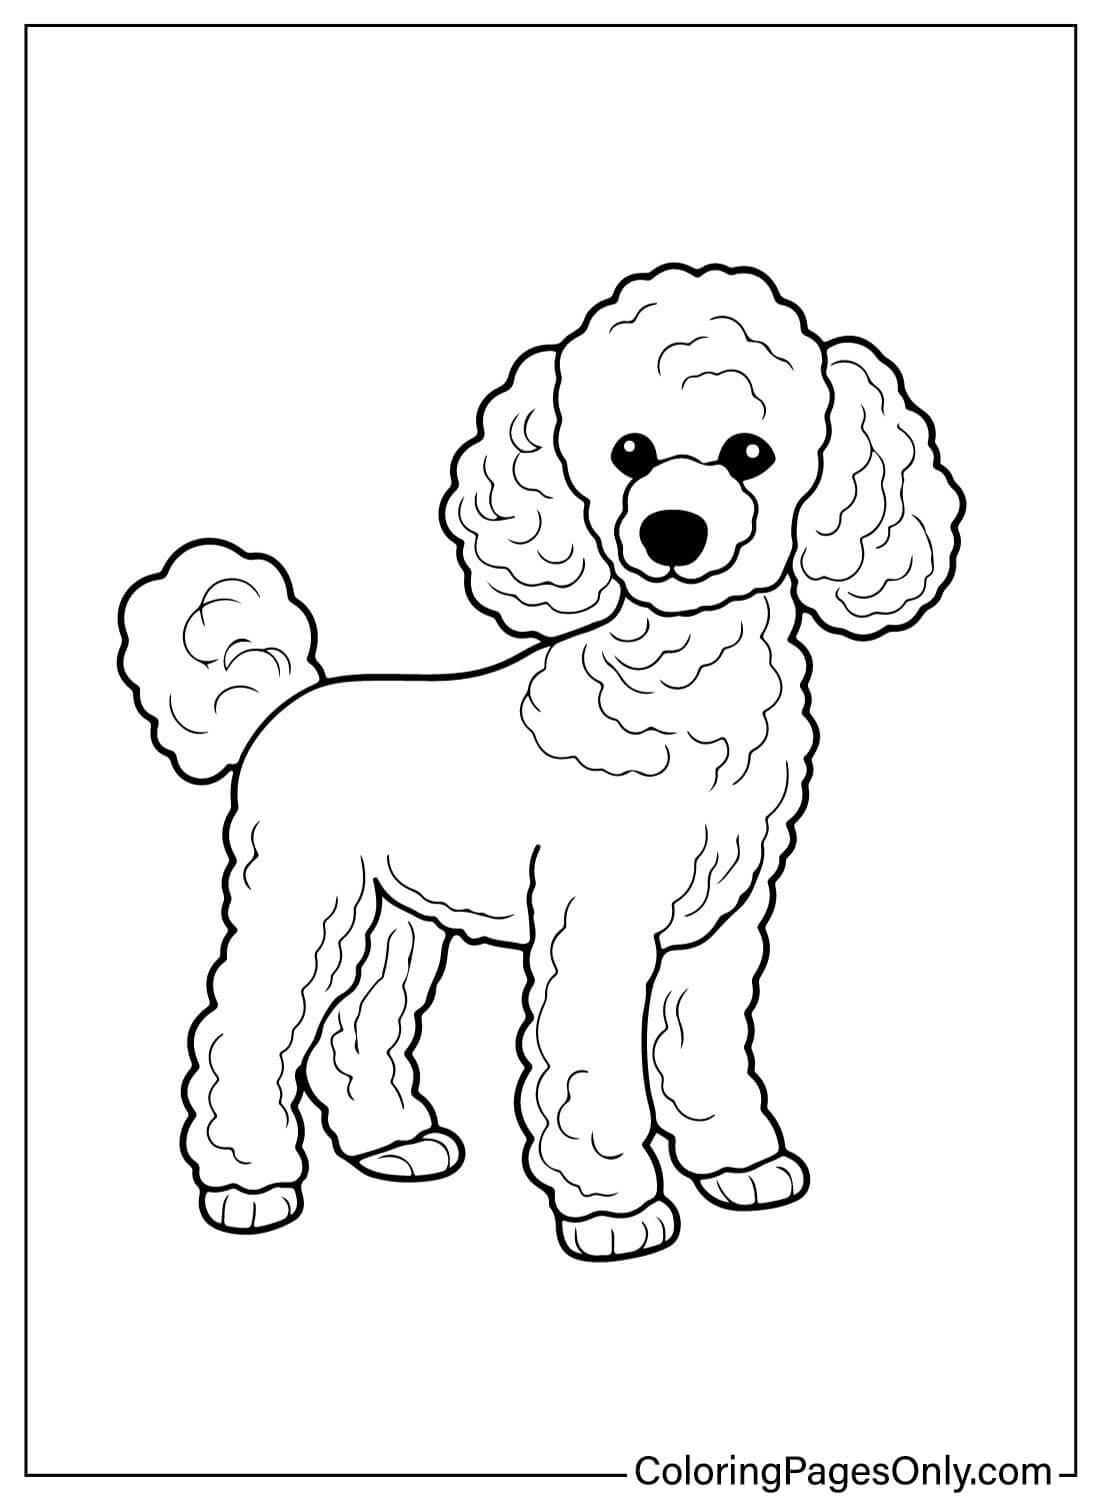 Раскраска Пудель от Poodle для печати